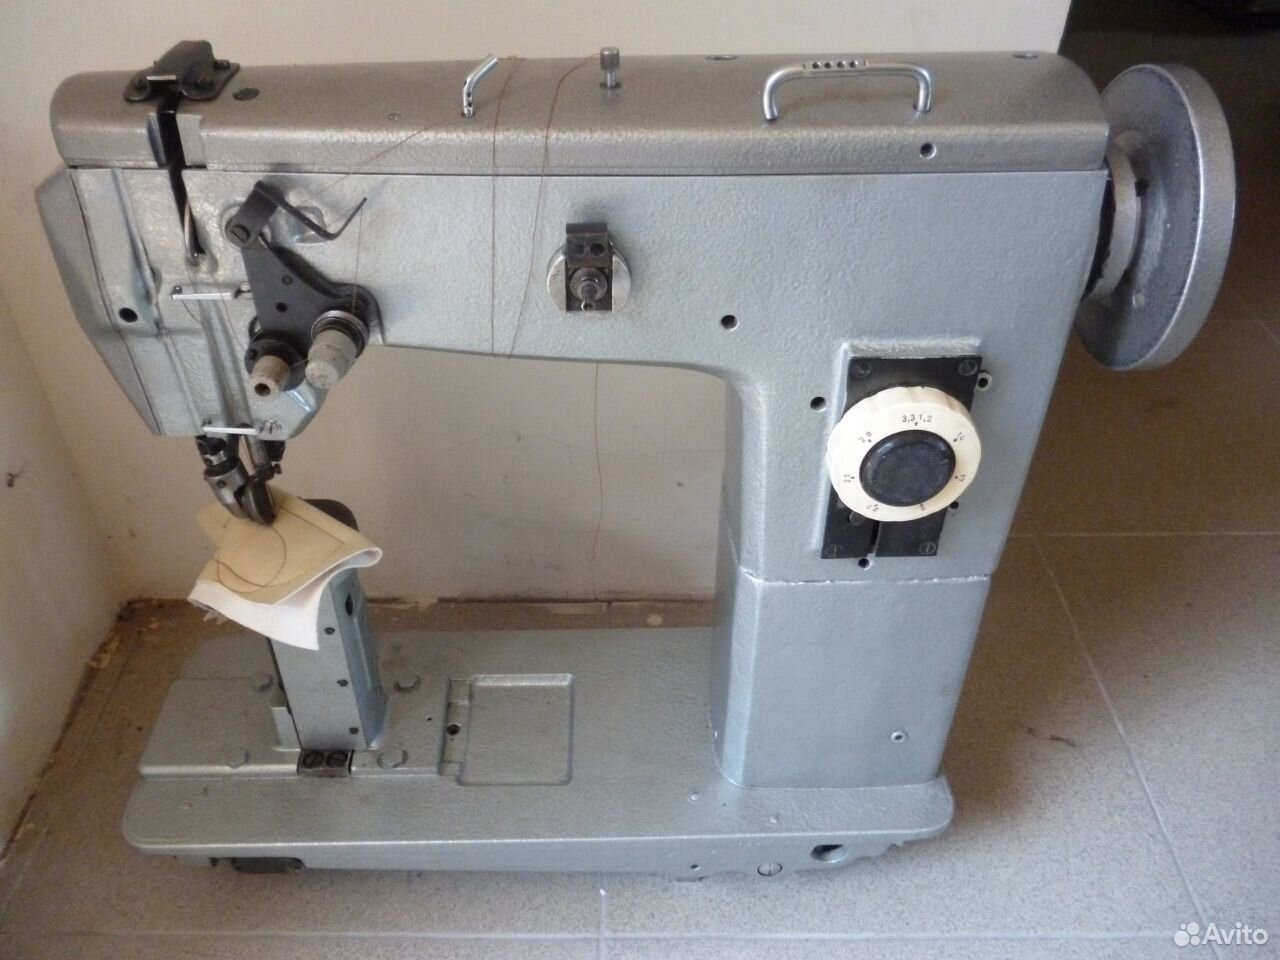 Авито машинка промышленная. Промышленная швейная машина ПМЗ 330. Швейная машинка 332 класс колонковая. Швейная машина 236 класс колонковая швейная. ПМЗ колонковая швейная машина.